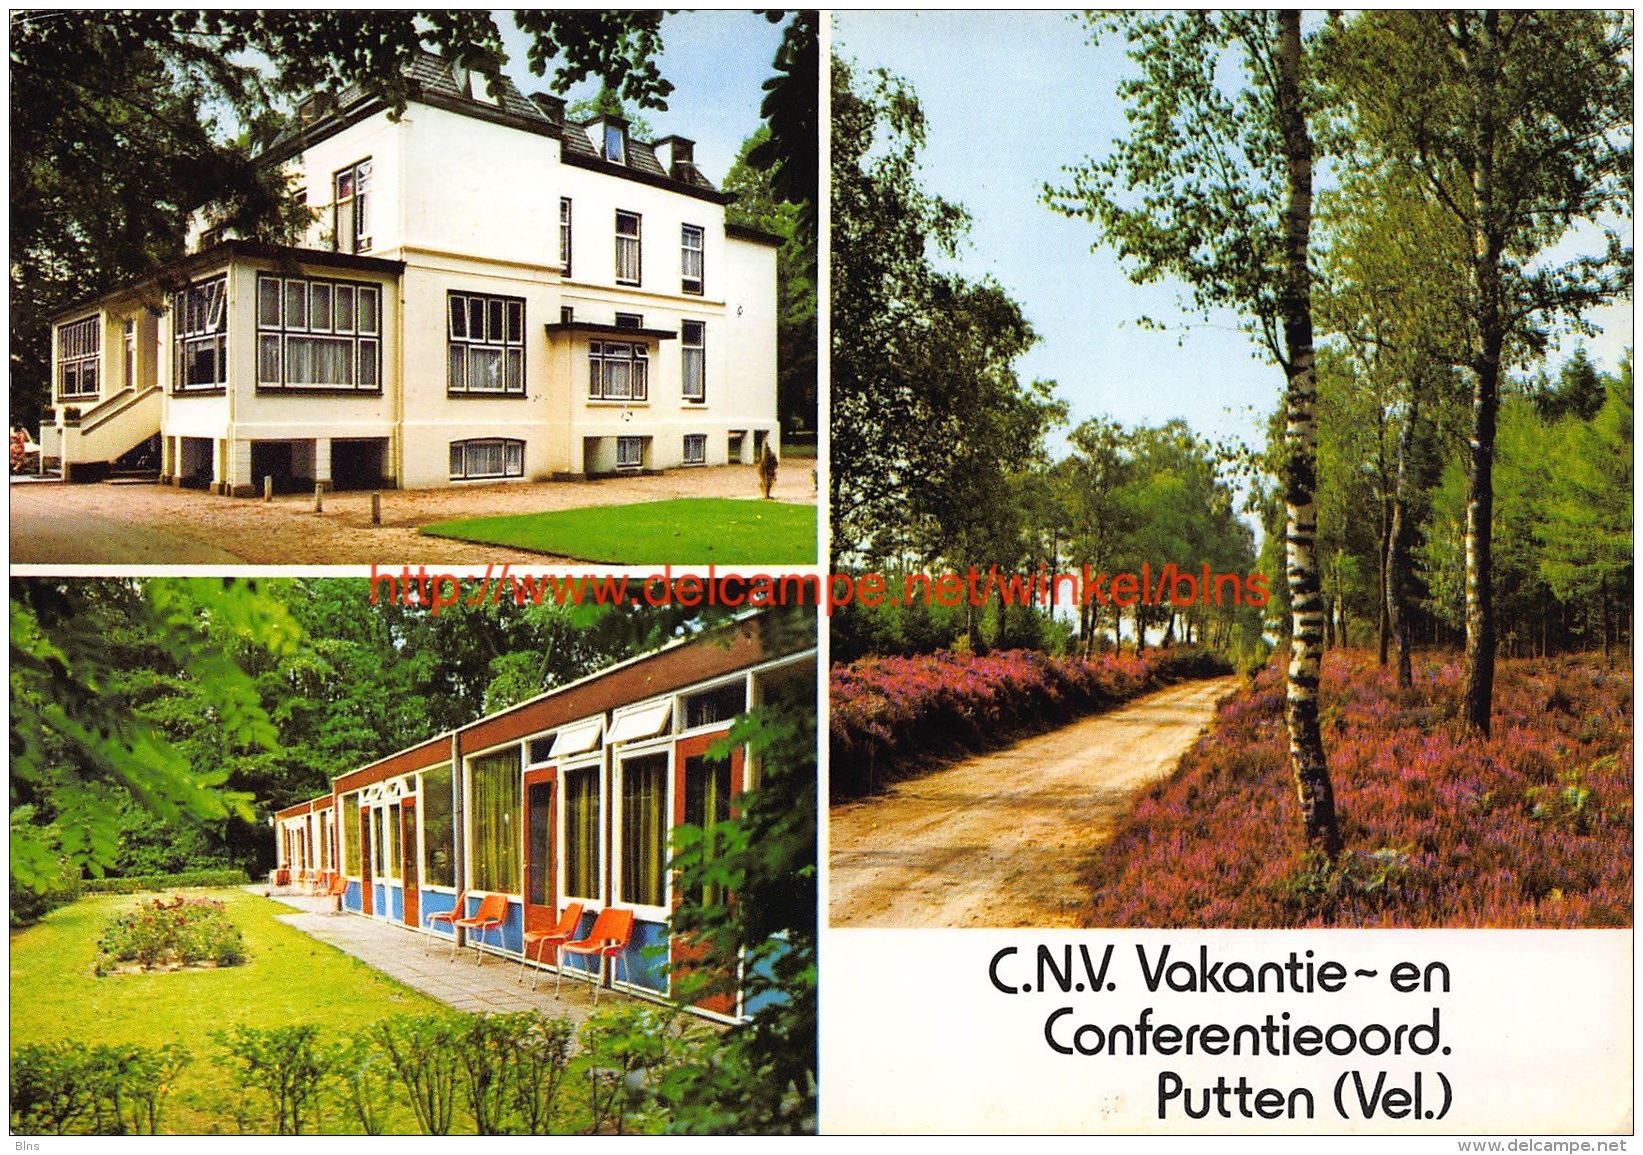 C.N.V. Vakantie- En Conferentieoord Putten - Putten